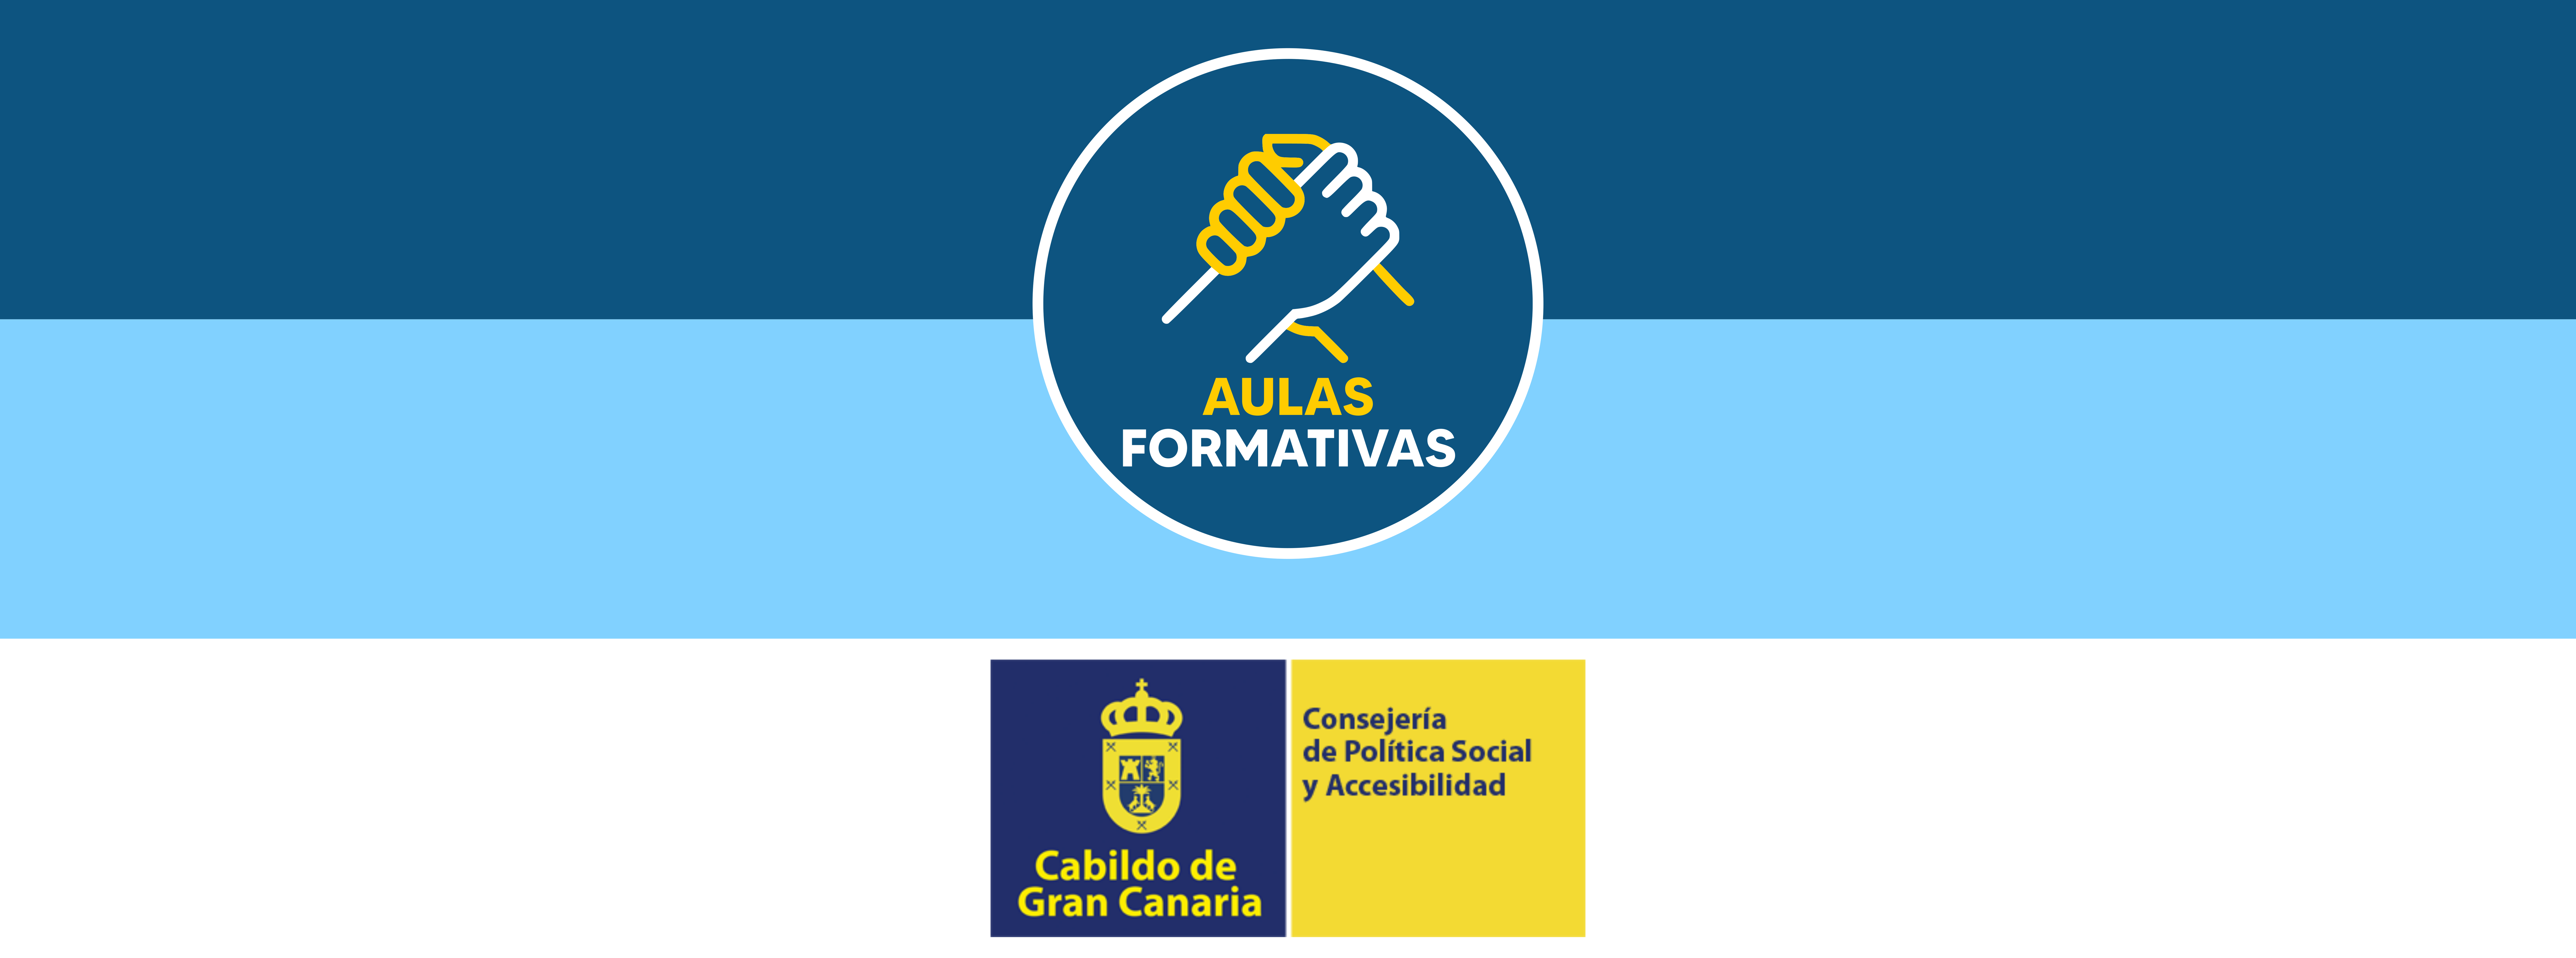 Logo de la Consejería de Política Social y Accesibilidad y logo de Aulas Formativas